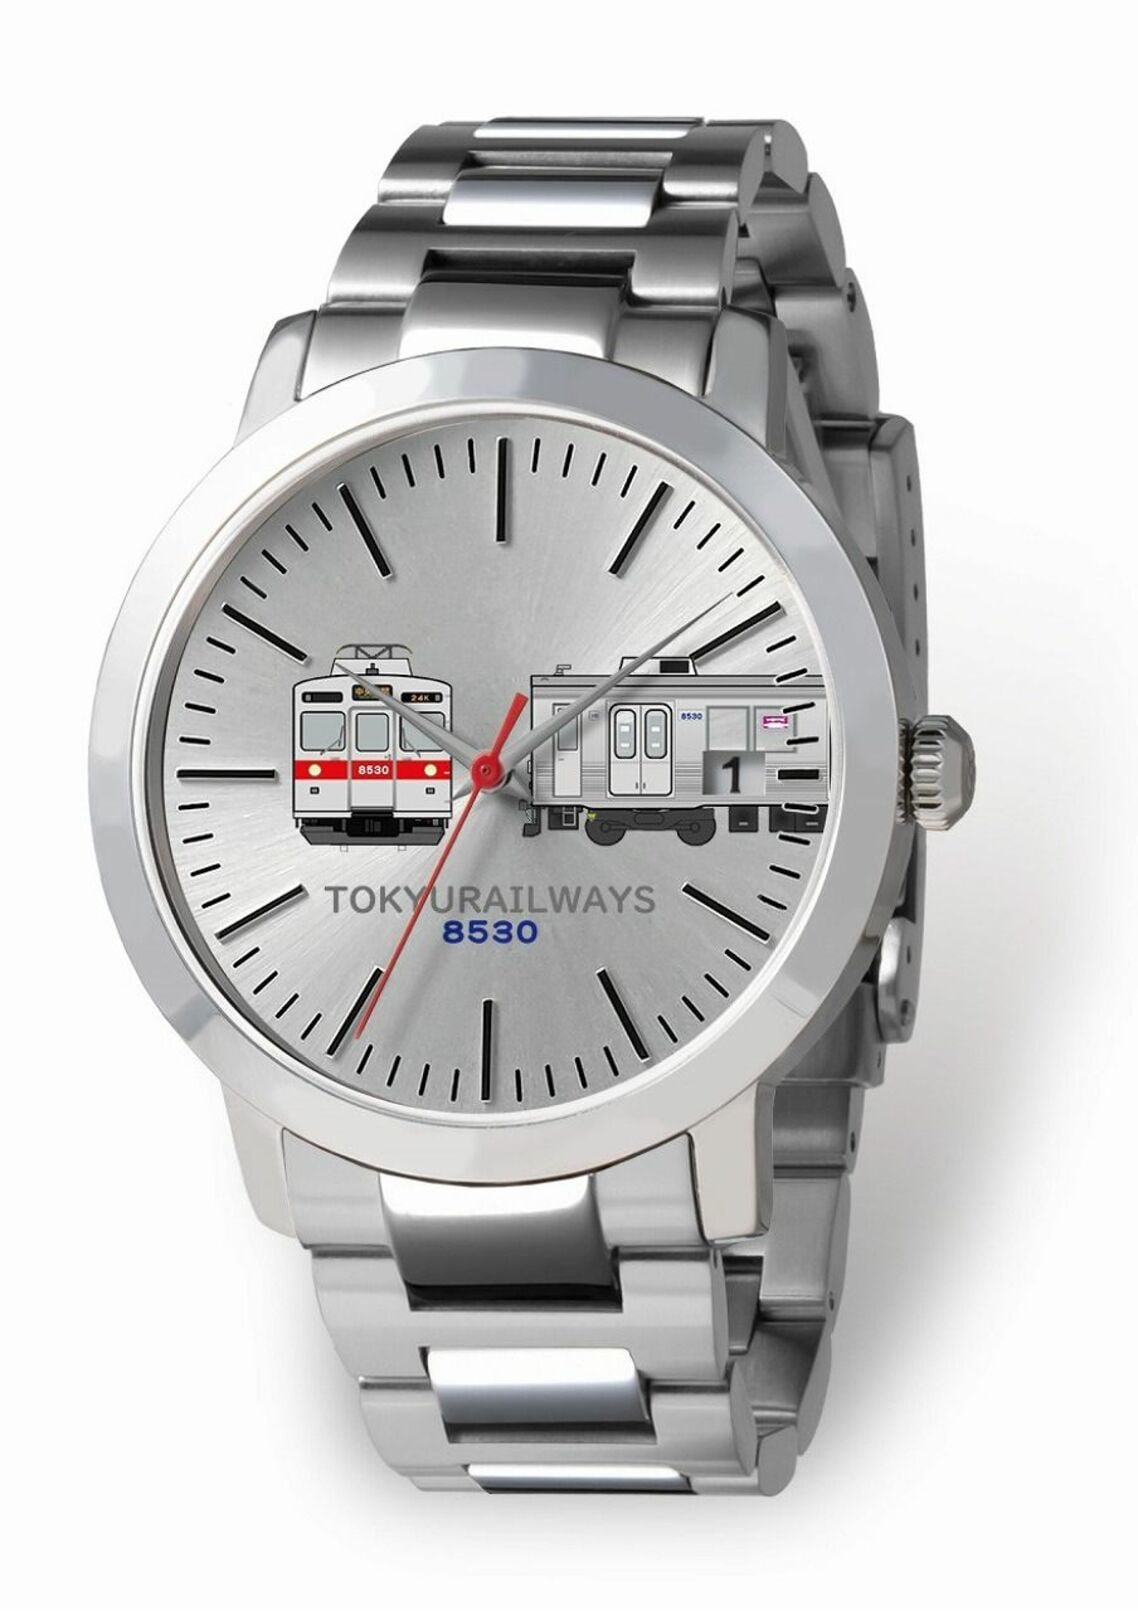 8500系をイメージした腕時計。提供は鉄道模型ファンに